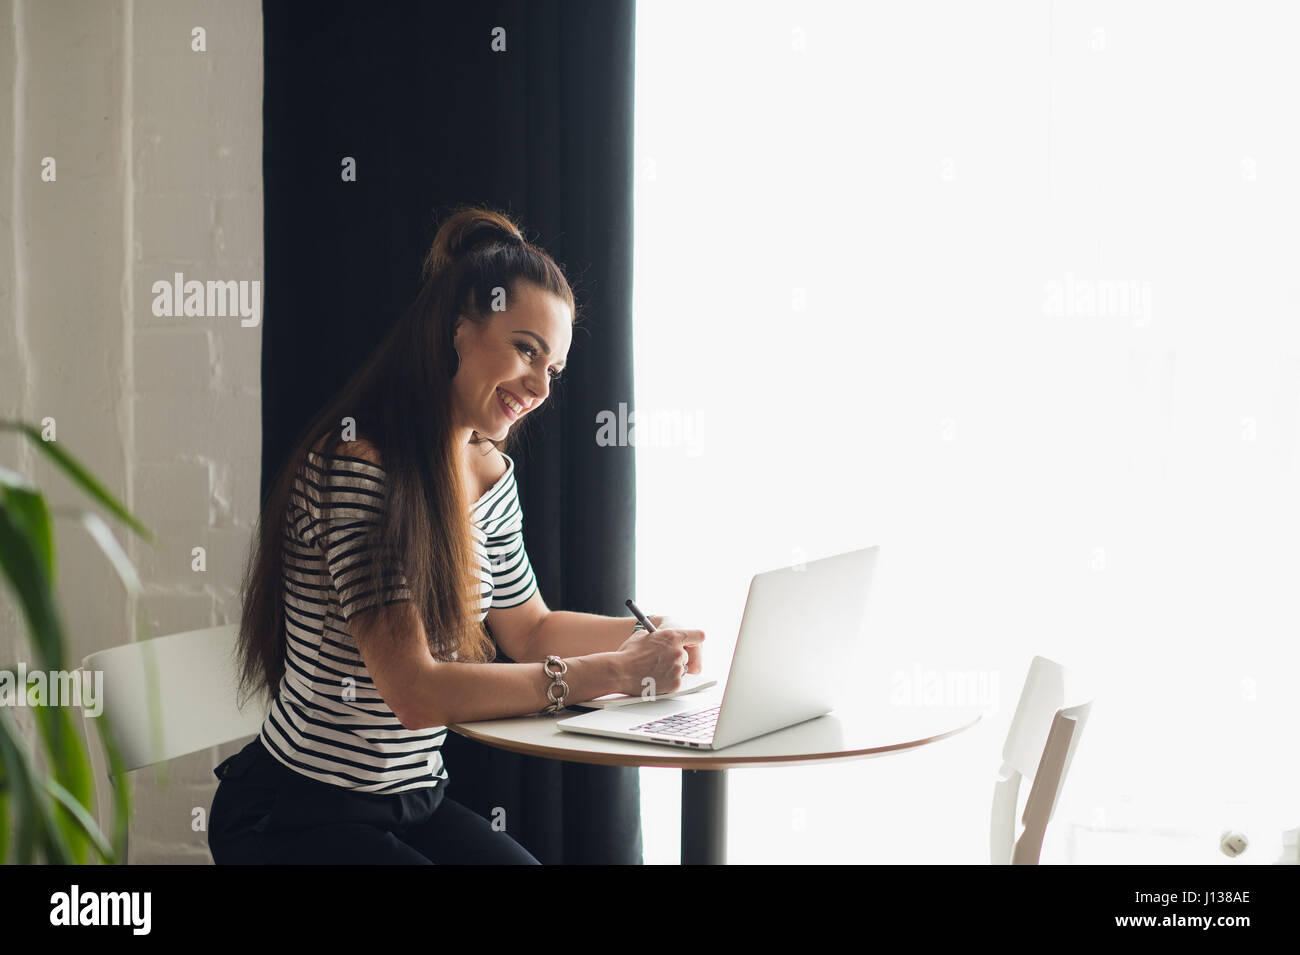 Foto von hübsche Frau Notizen machen und denken über ein Thema während der Sitzung in einigen Coffee-Shop mit ihrem Laptop in der Nähe großer Fenster. Stockfoto